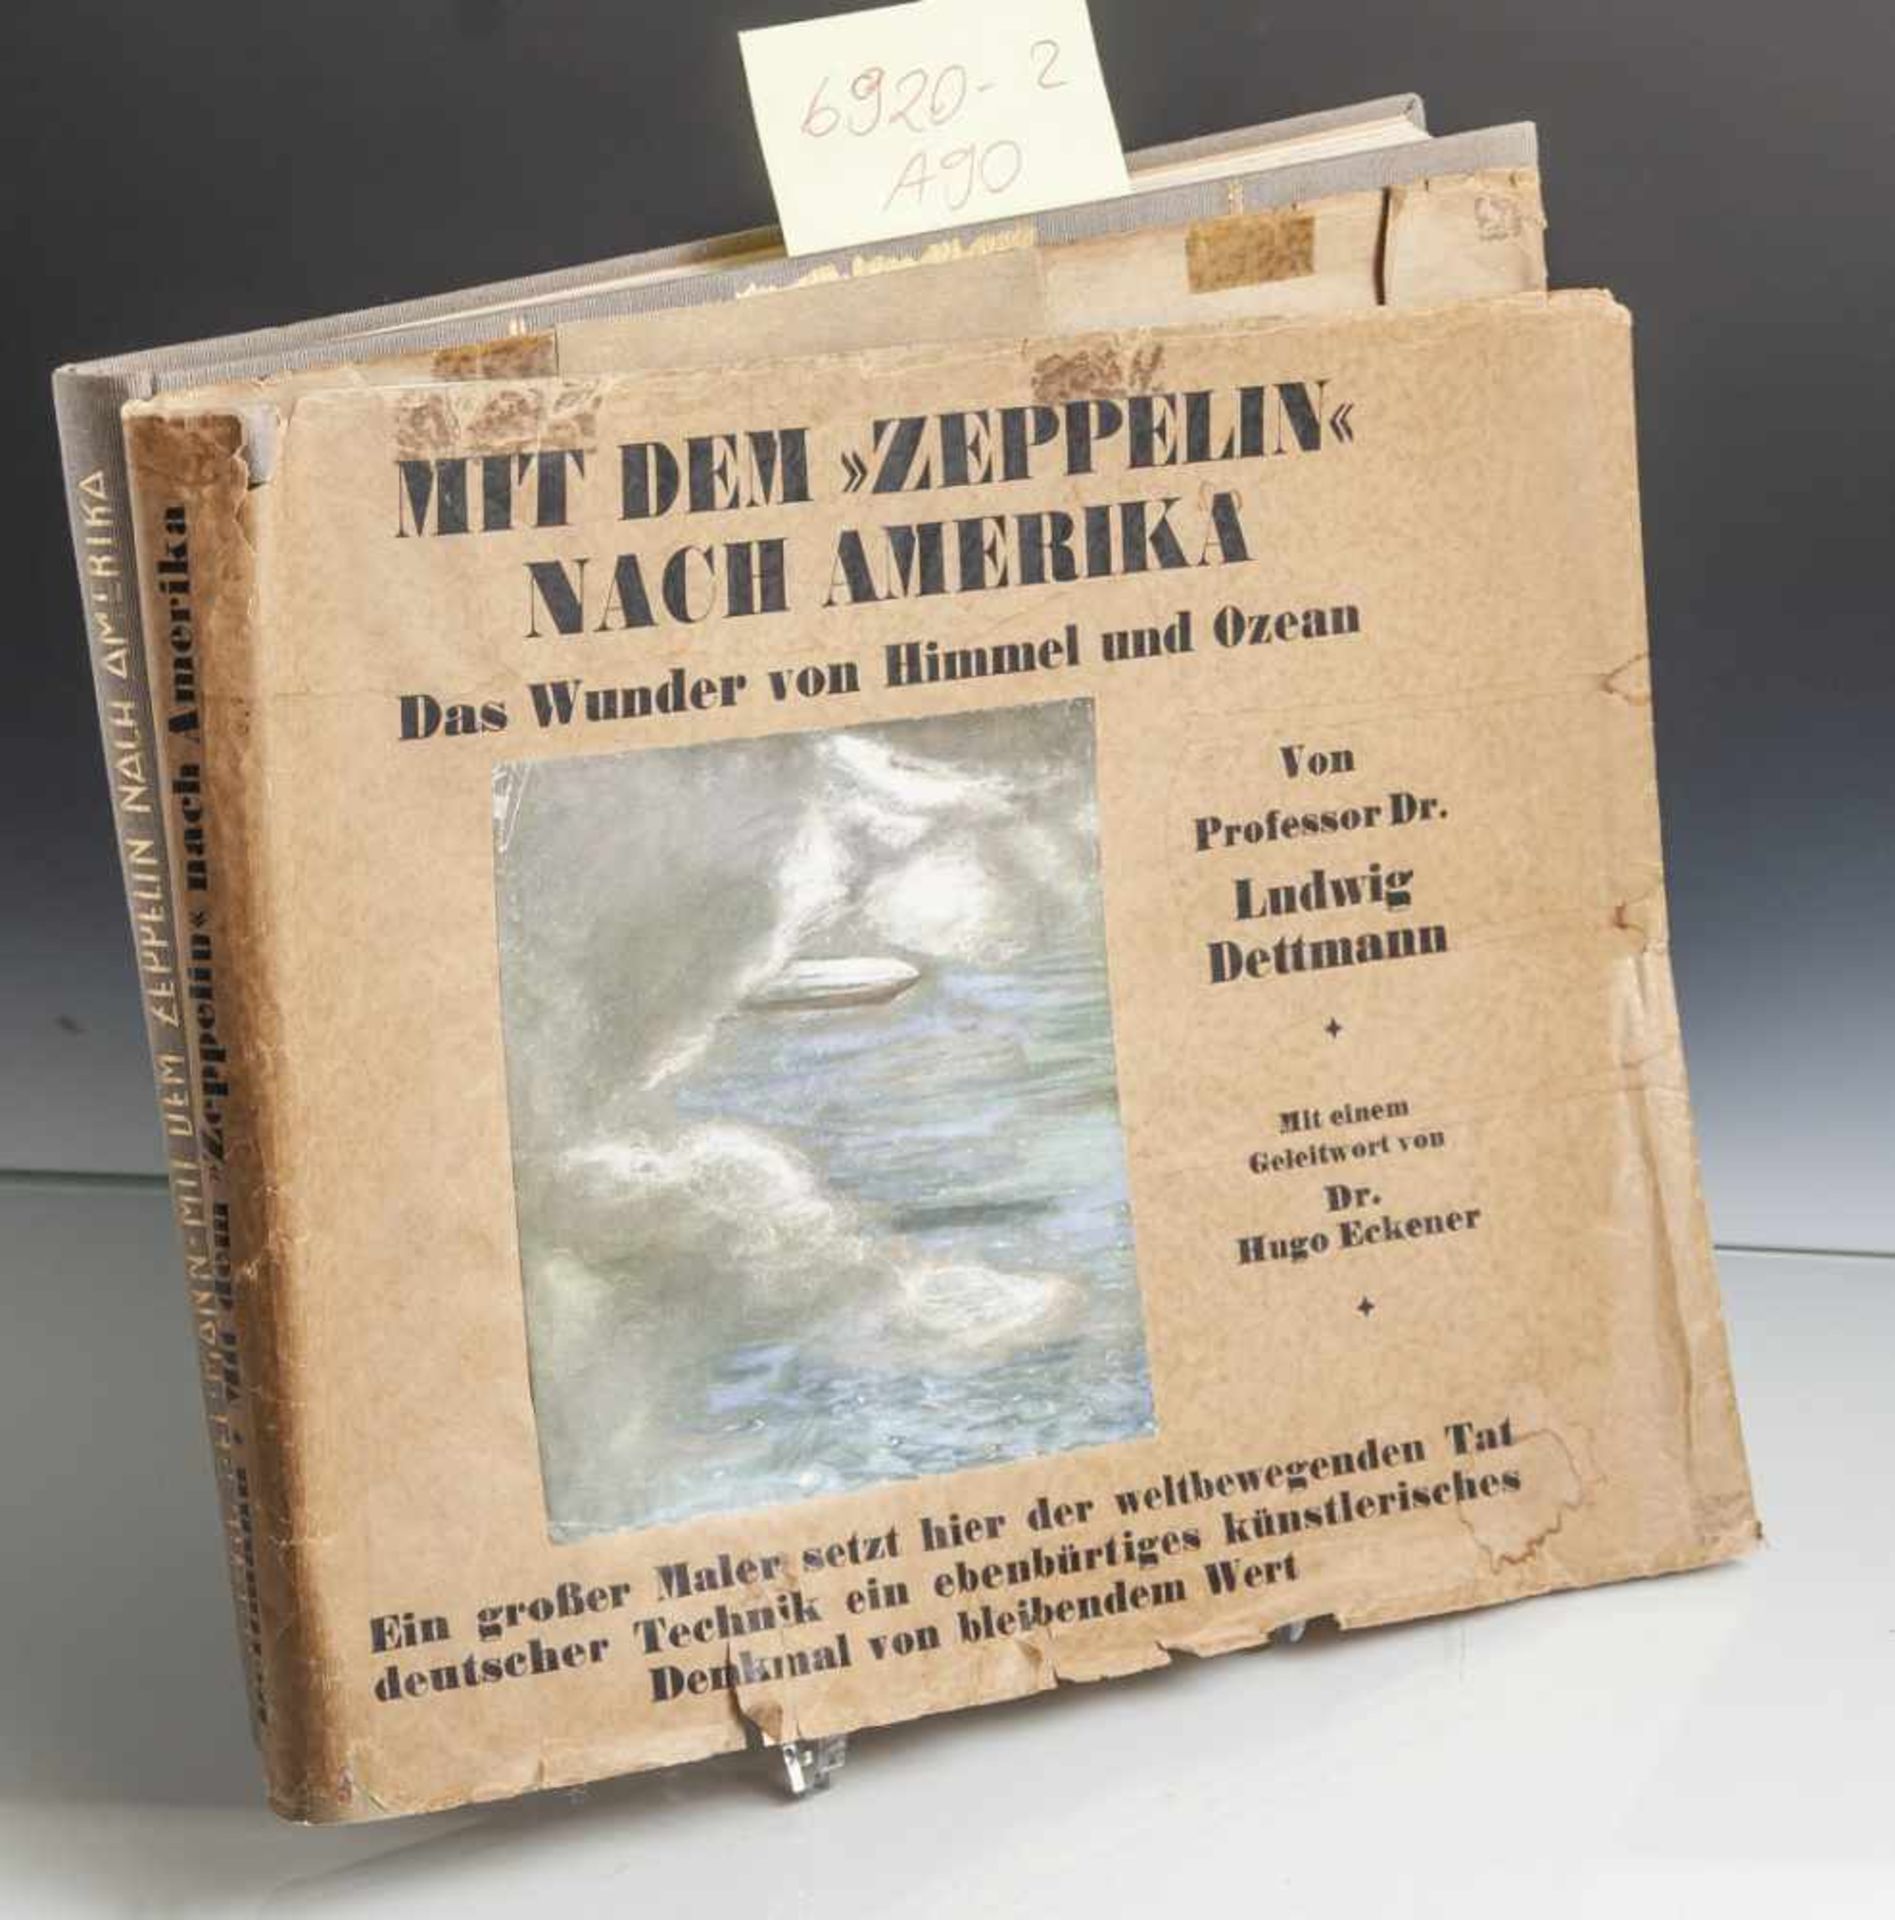 Dettmann, Ludwig Prof. Dr., Mit dem Zeppelin nach Amerika. Das Wunder von Himmel und Ozean. Mit